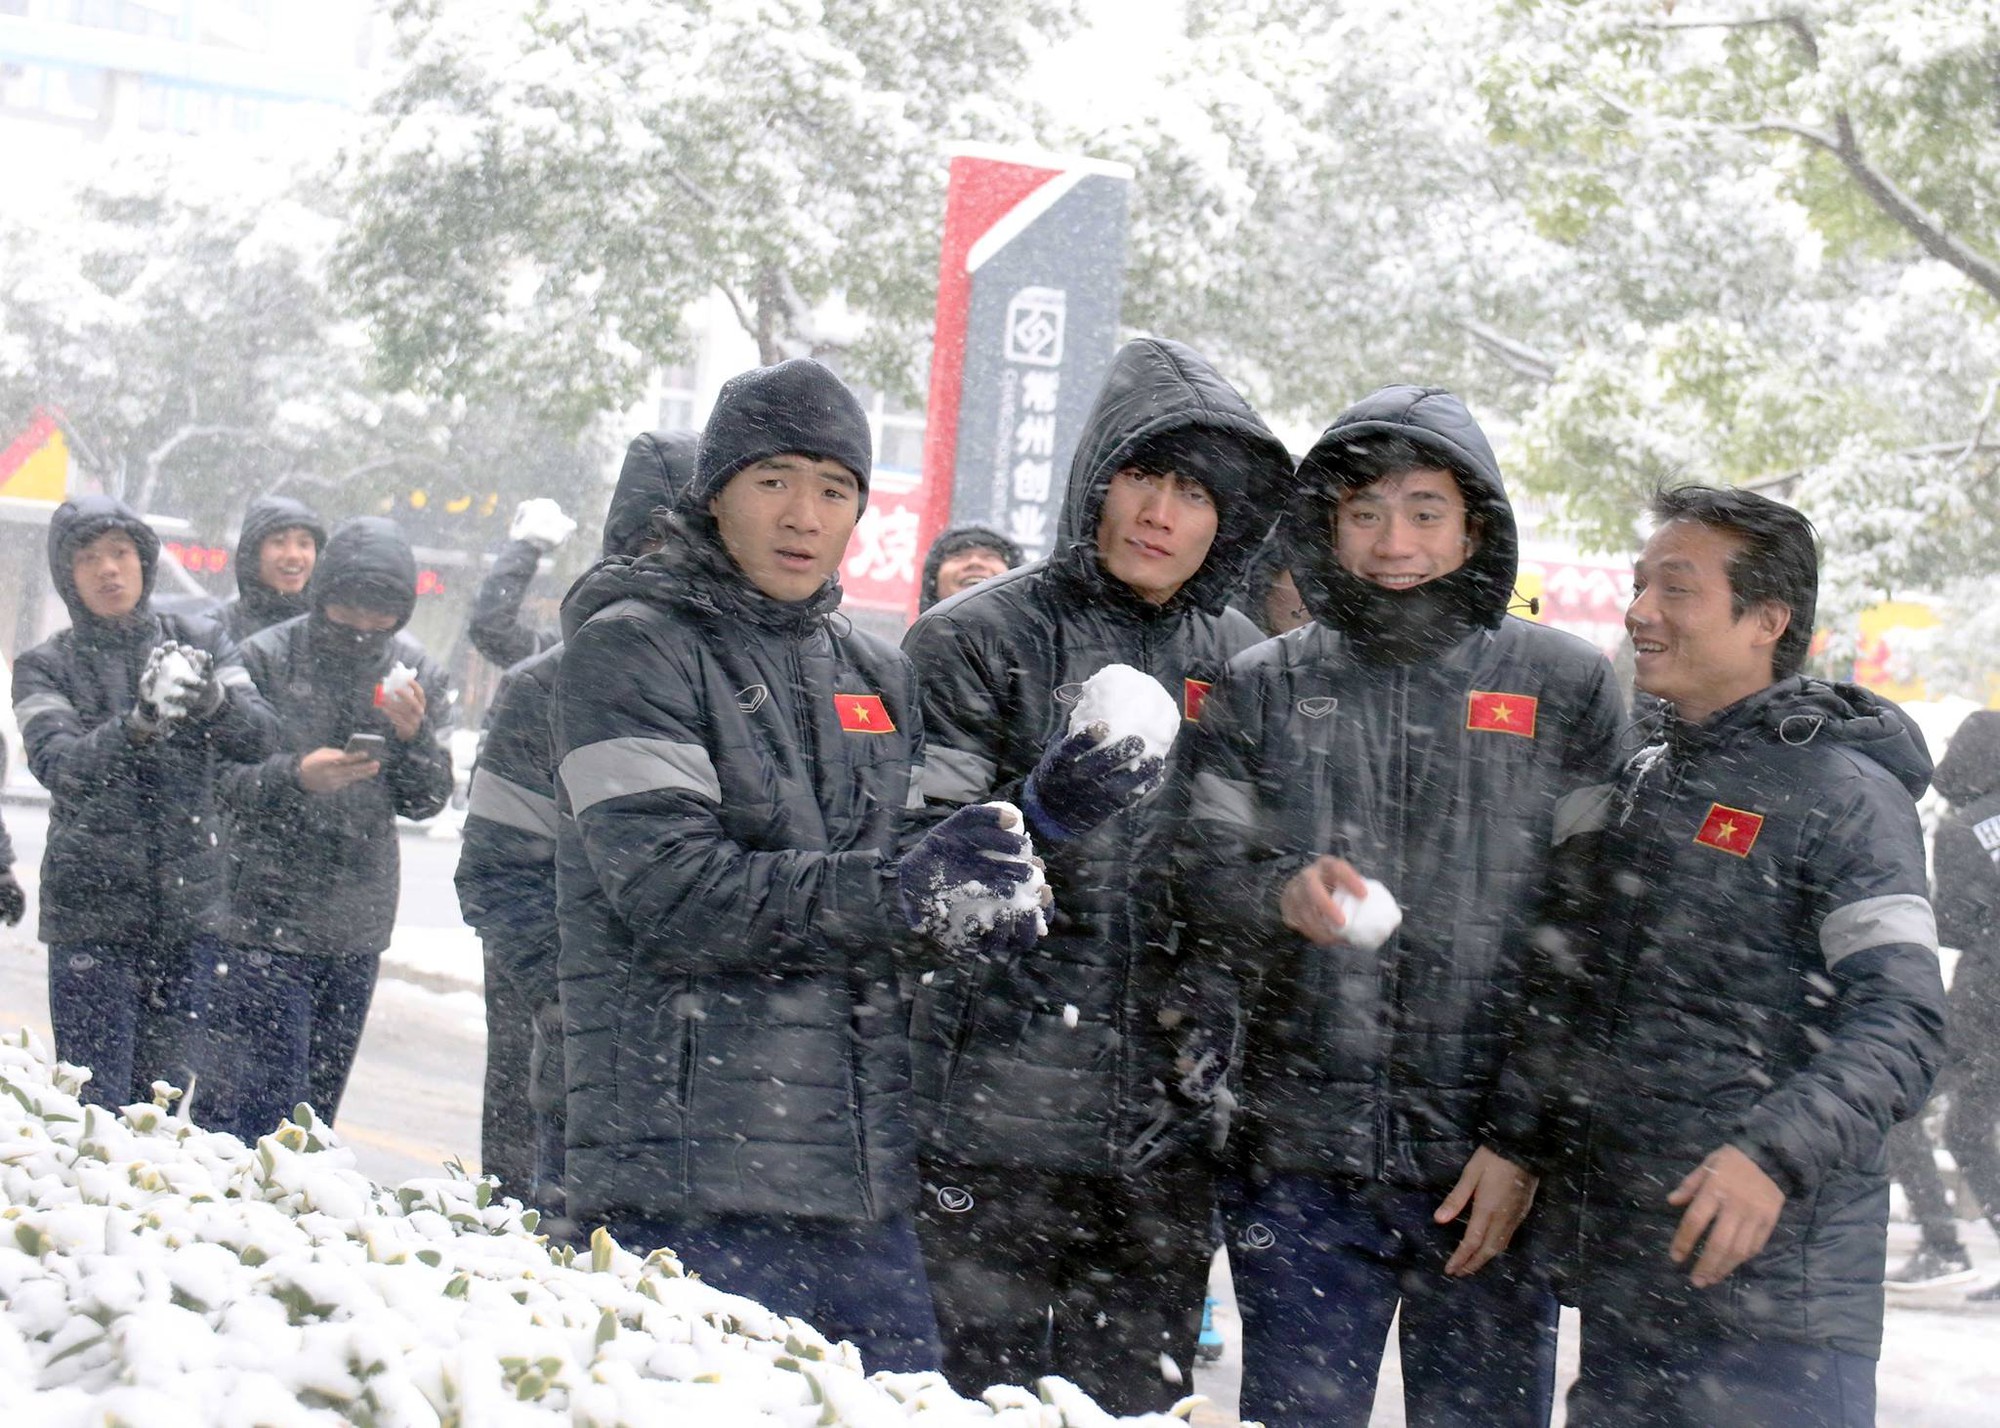 Nhiệt độ ban ngày ở Thường Châu lúc này là -1 độ C, tuyết rơi dày, phủ kín các lôi đi củng như cây cối ở trung tâm thành phố. Cảnh tượng khiến nhiều tuyển thủ U23 Việt Nam không khỏi nghịch ngợm. Ảnh: VFF.